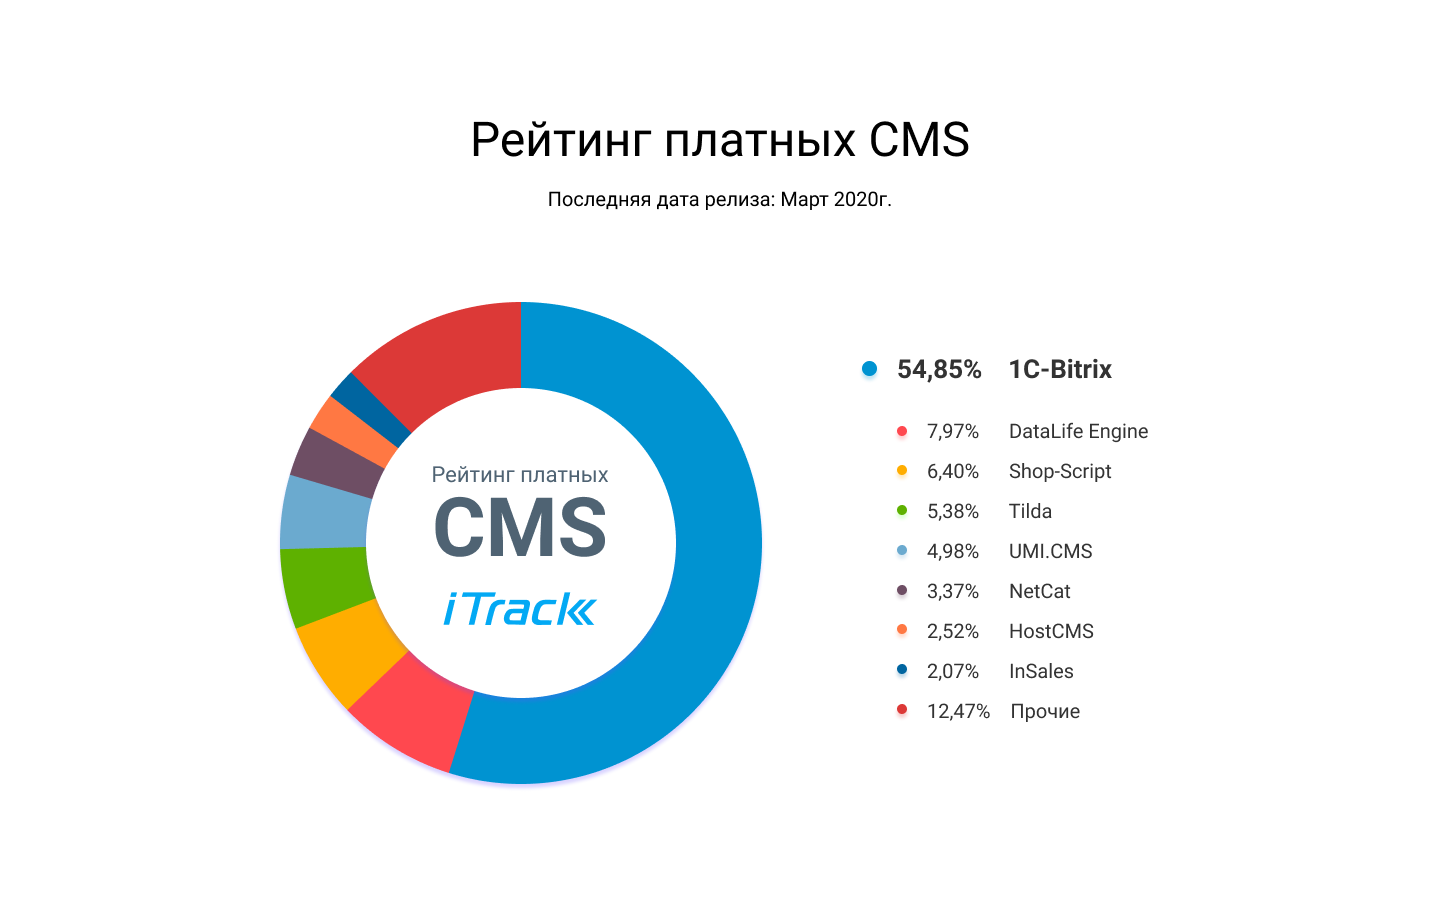 Рейтинг платных CMS 2020 в России - инфографика